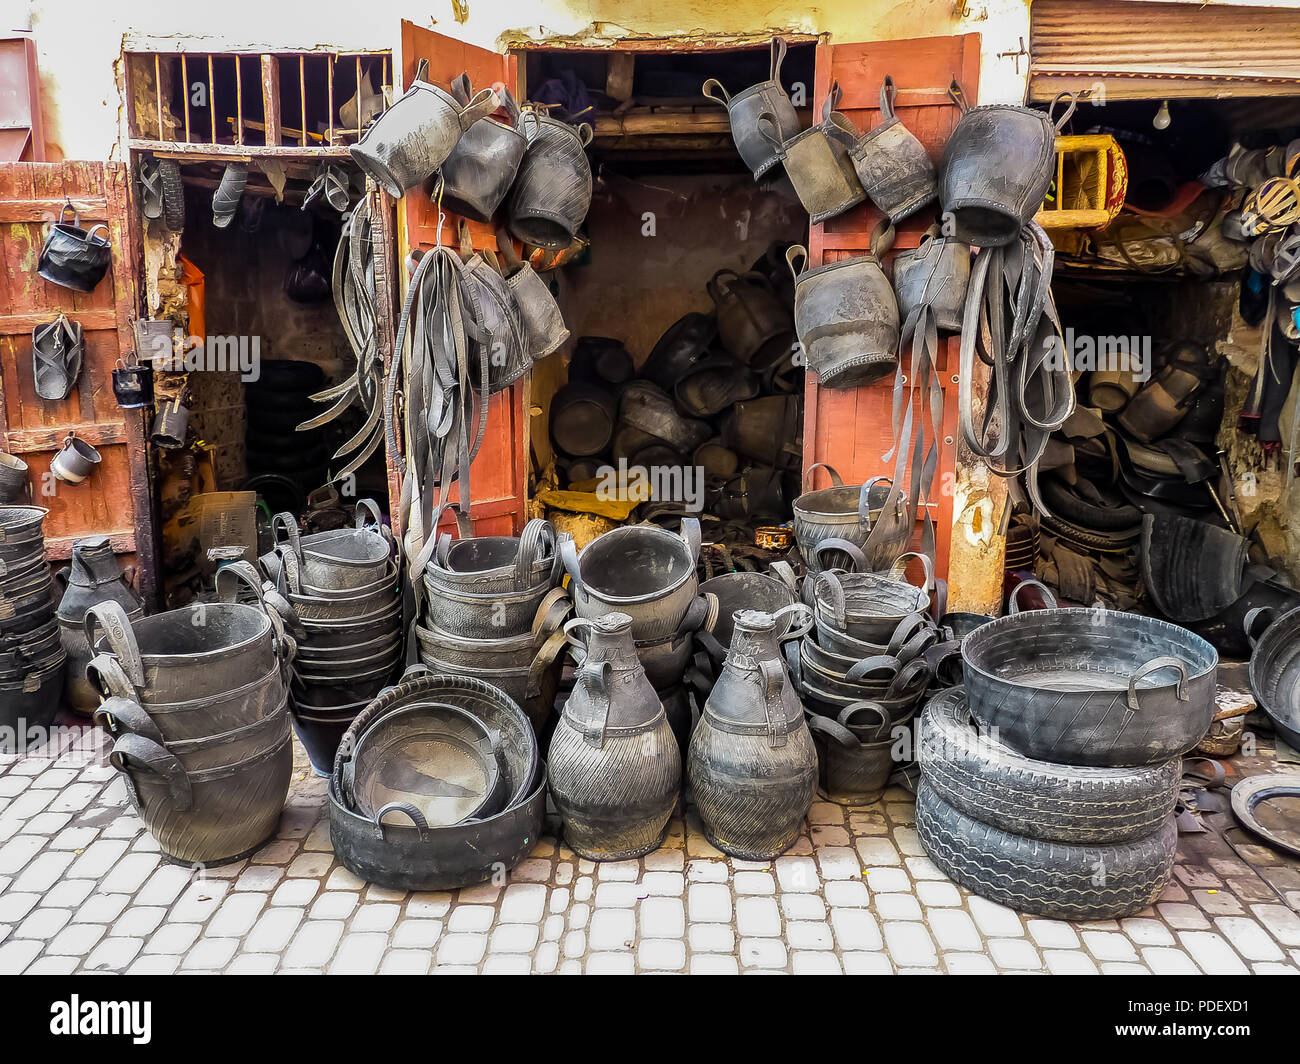 Le recyclage du caoutchouc des pneus de voitures et de vélos et de chambres à air d'objets domestiques de tous les jours mis à un souk à Marrakech, Maroc Banque D'Images